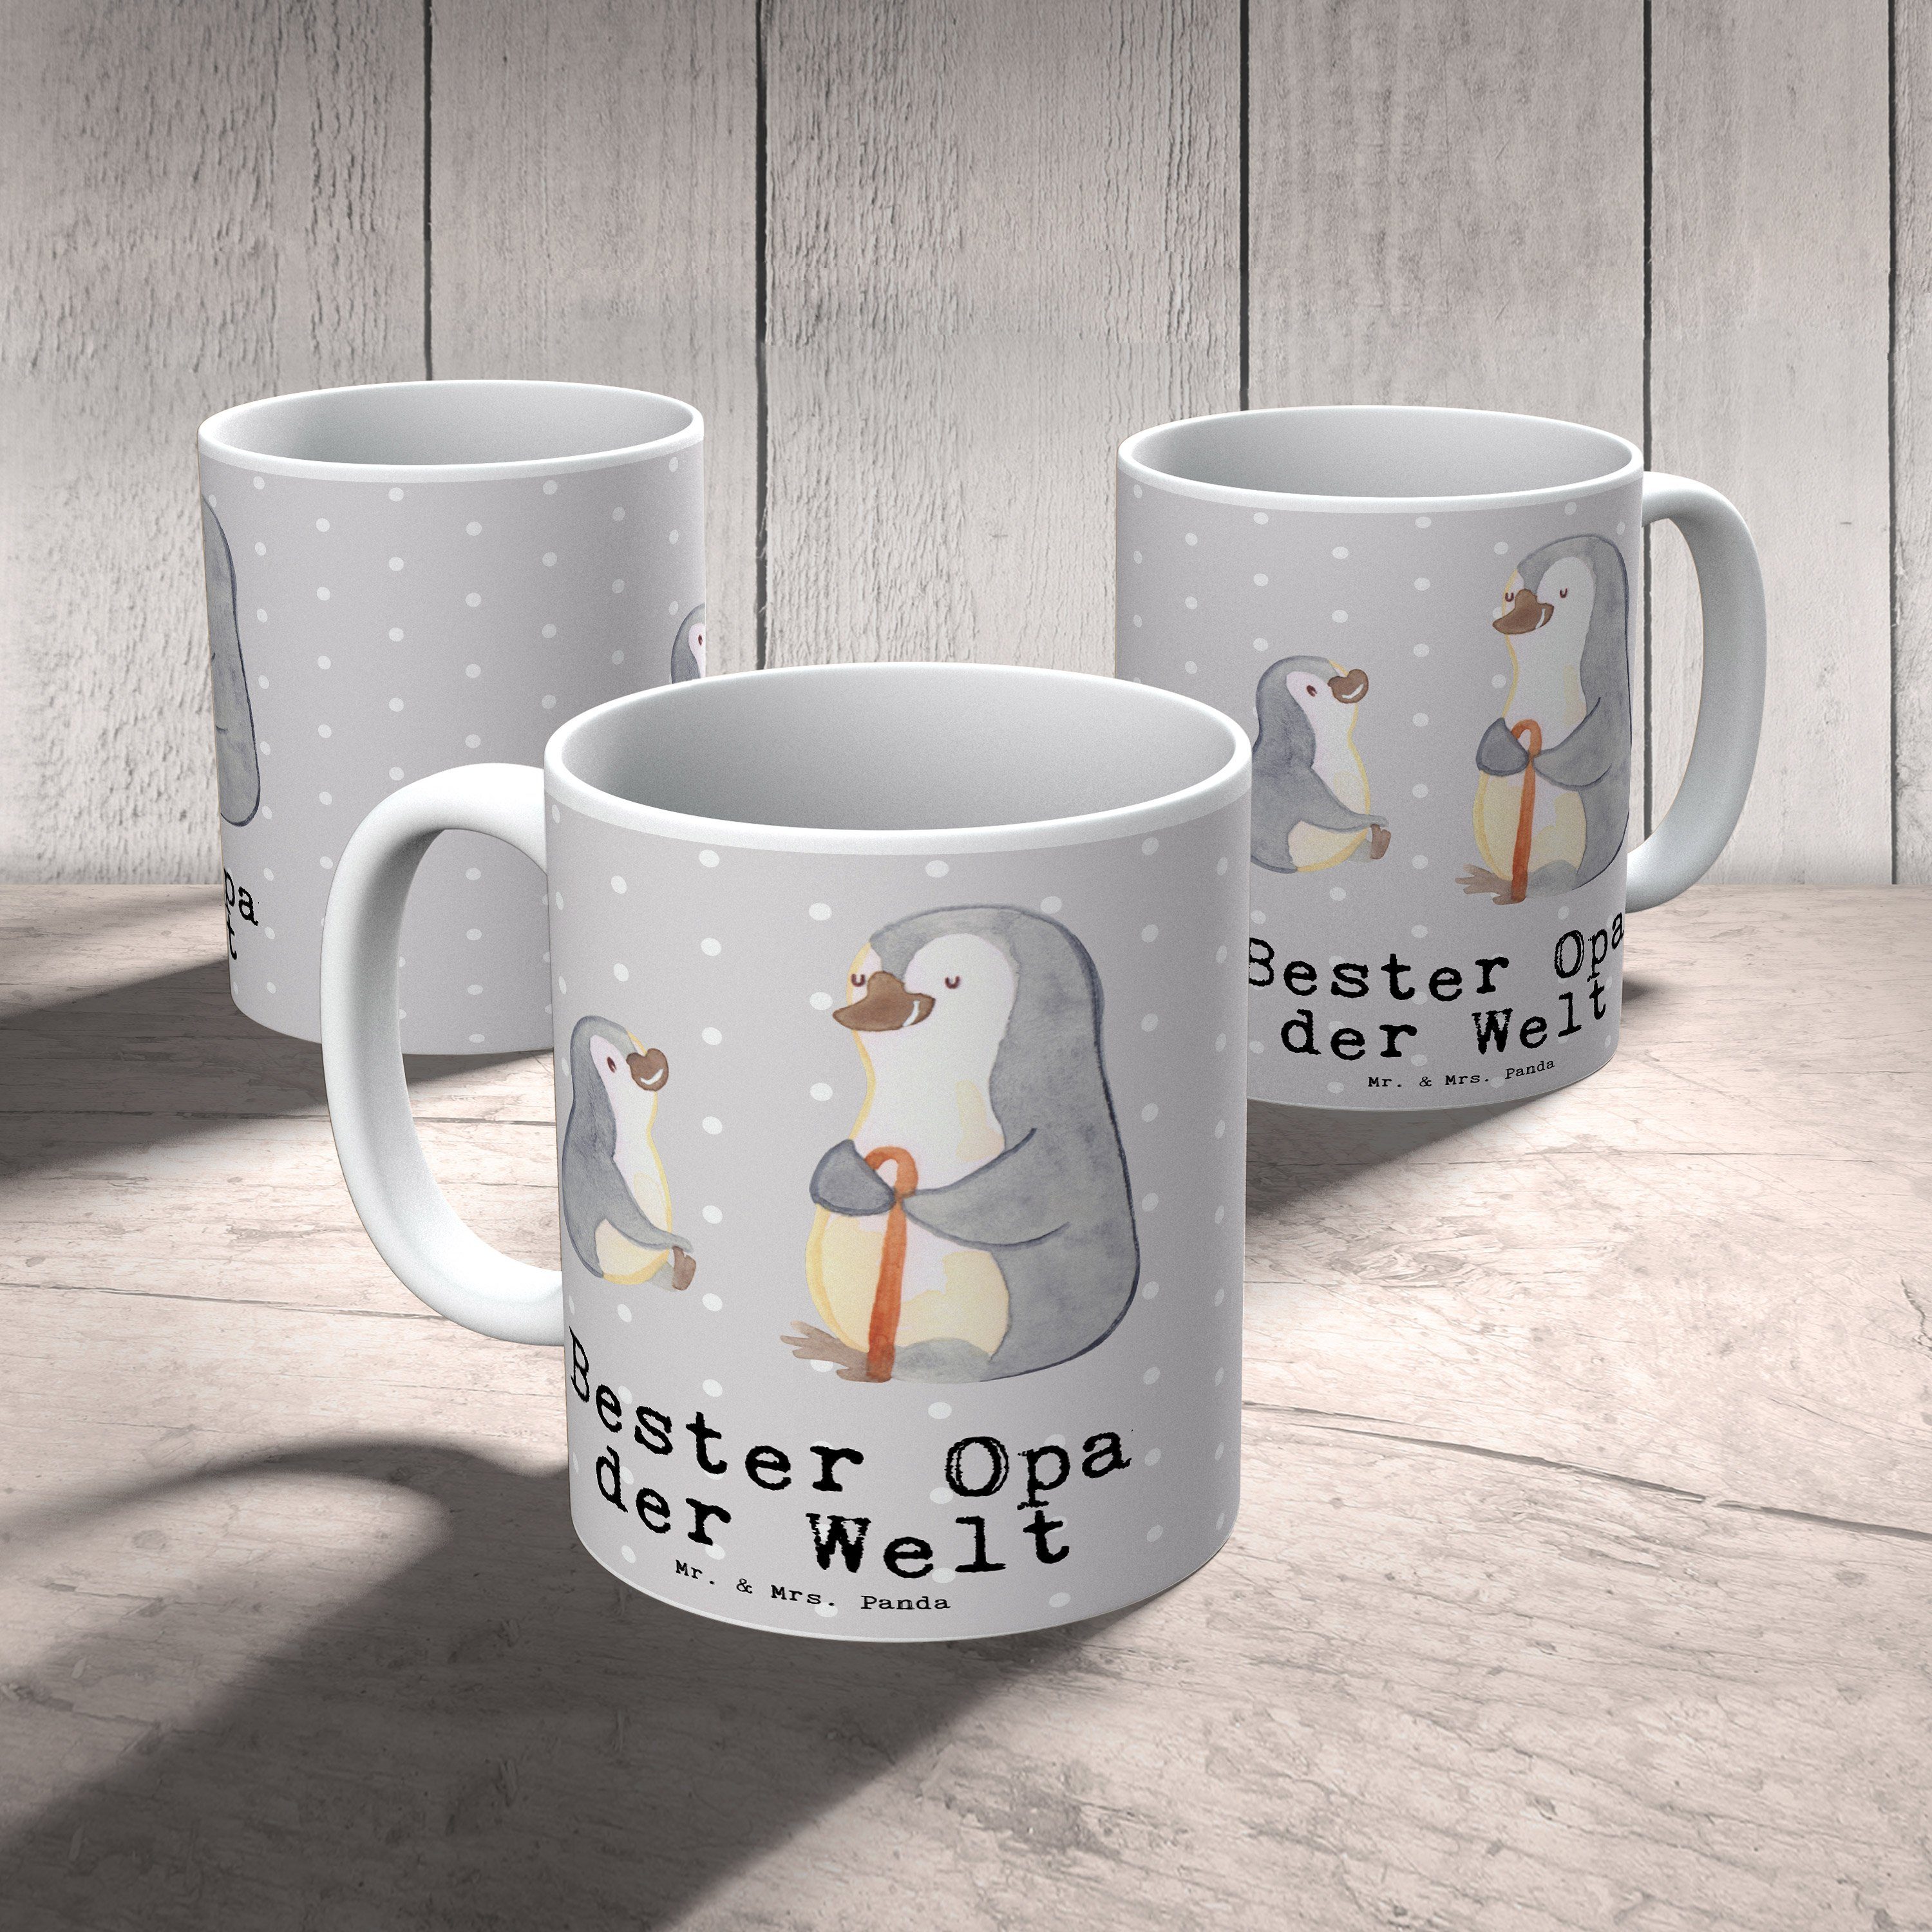 Mr. & Mrs. Panda Bester Opa Welt Tasse - - Geschenk, Danke, Pinguin Keramik Grau Pastell der Becher